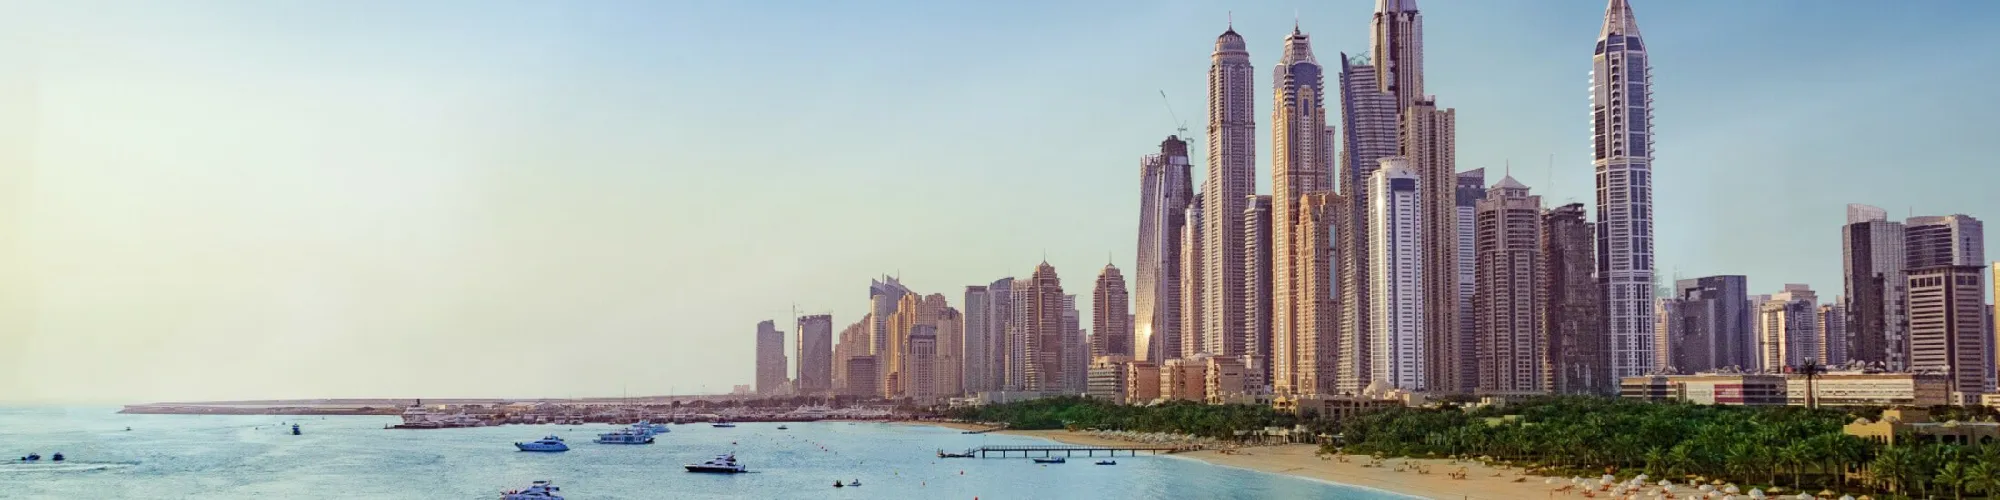 Zeit für Urlaubsgefühle in Dubai background image